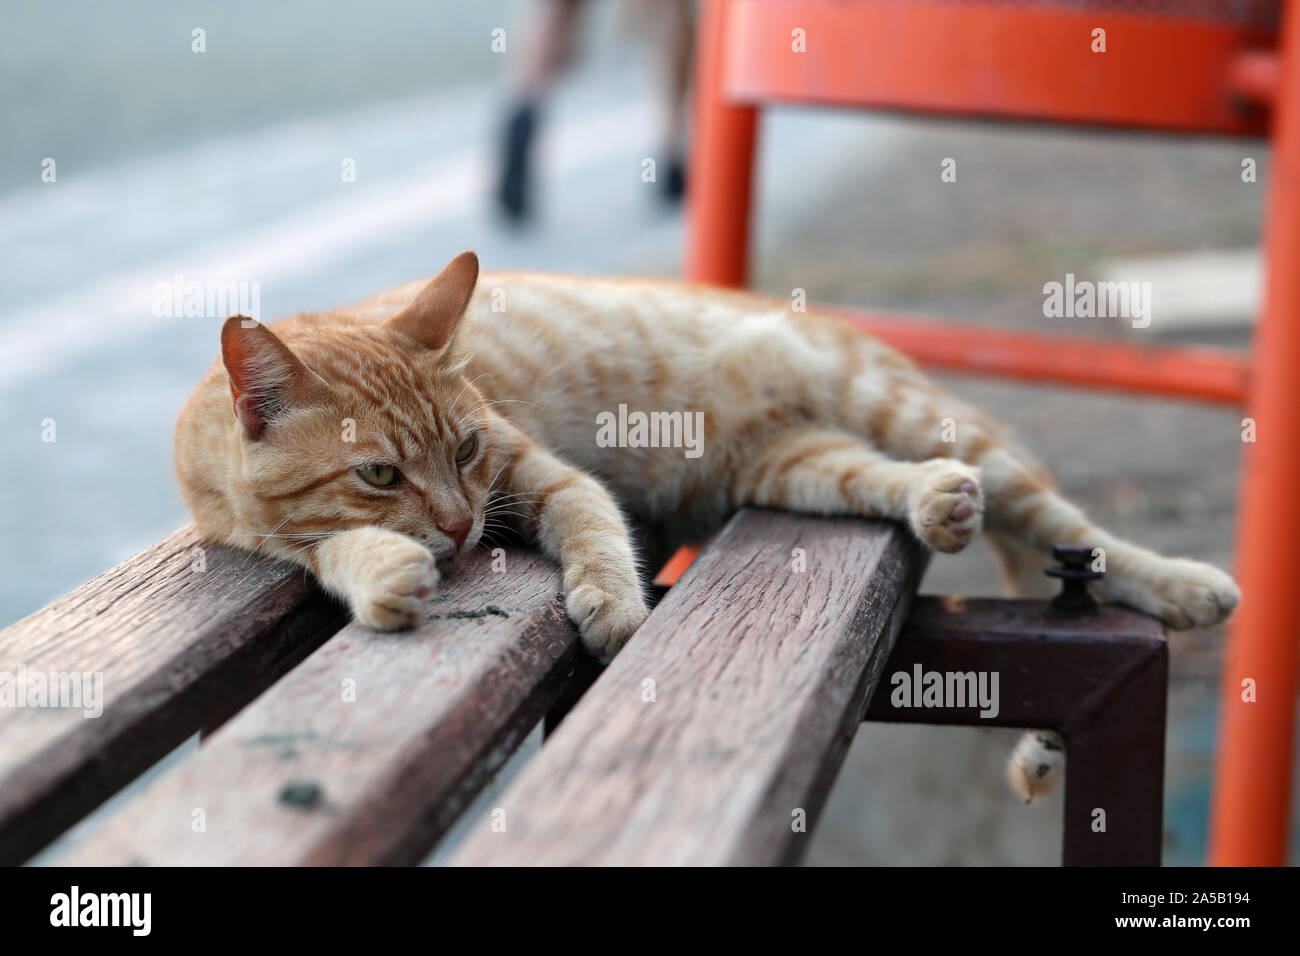 Lindo gato montés fotografiado en la isla de Chipre. Mullidas, peludo animal. Este es un gato a rayas naranja / color marrón y está sentando sobre un banco. Foto de stock